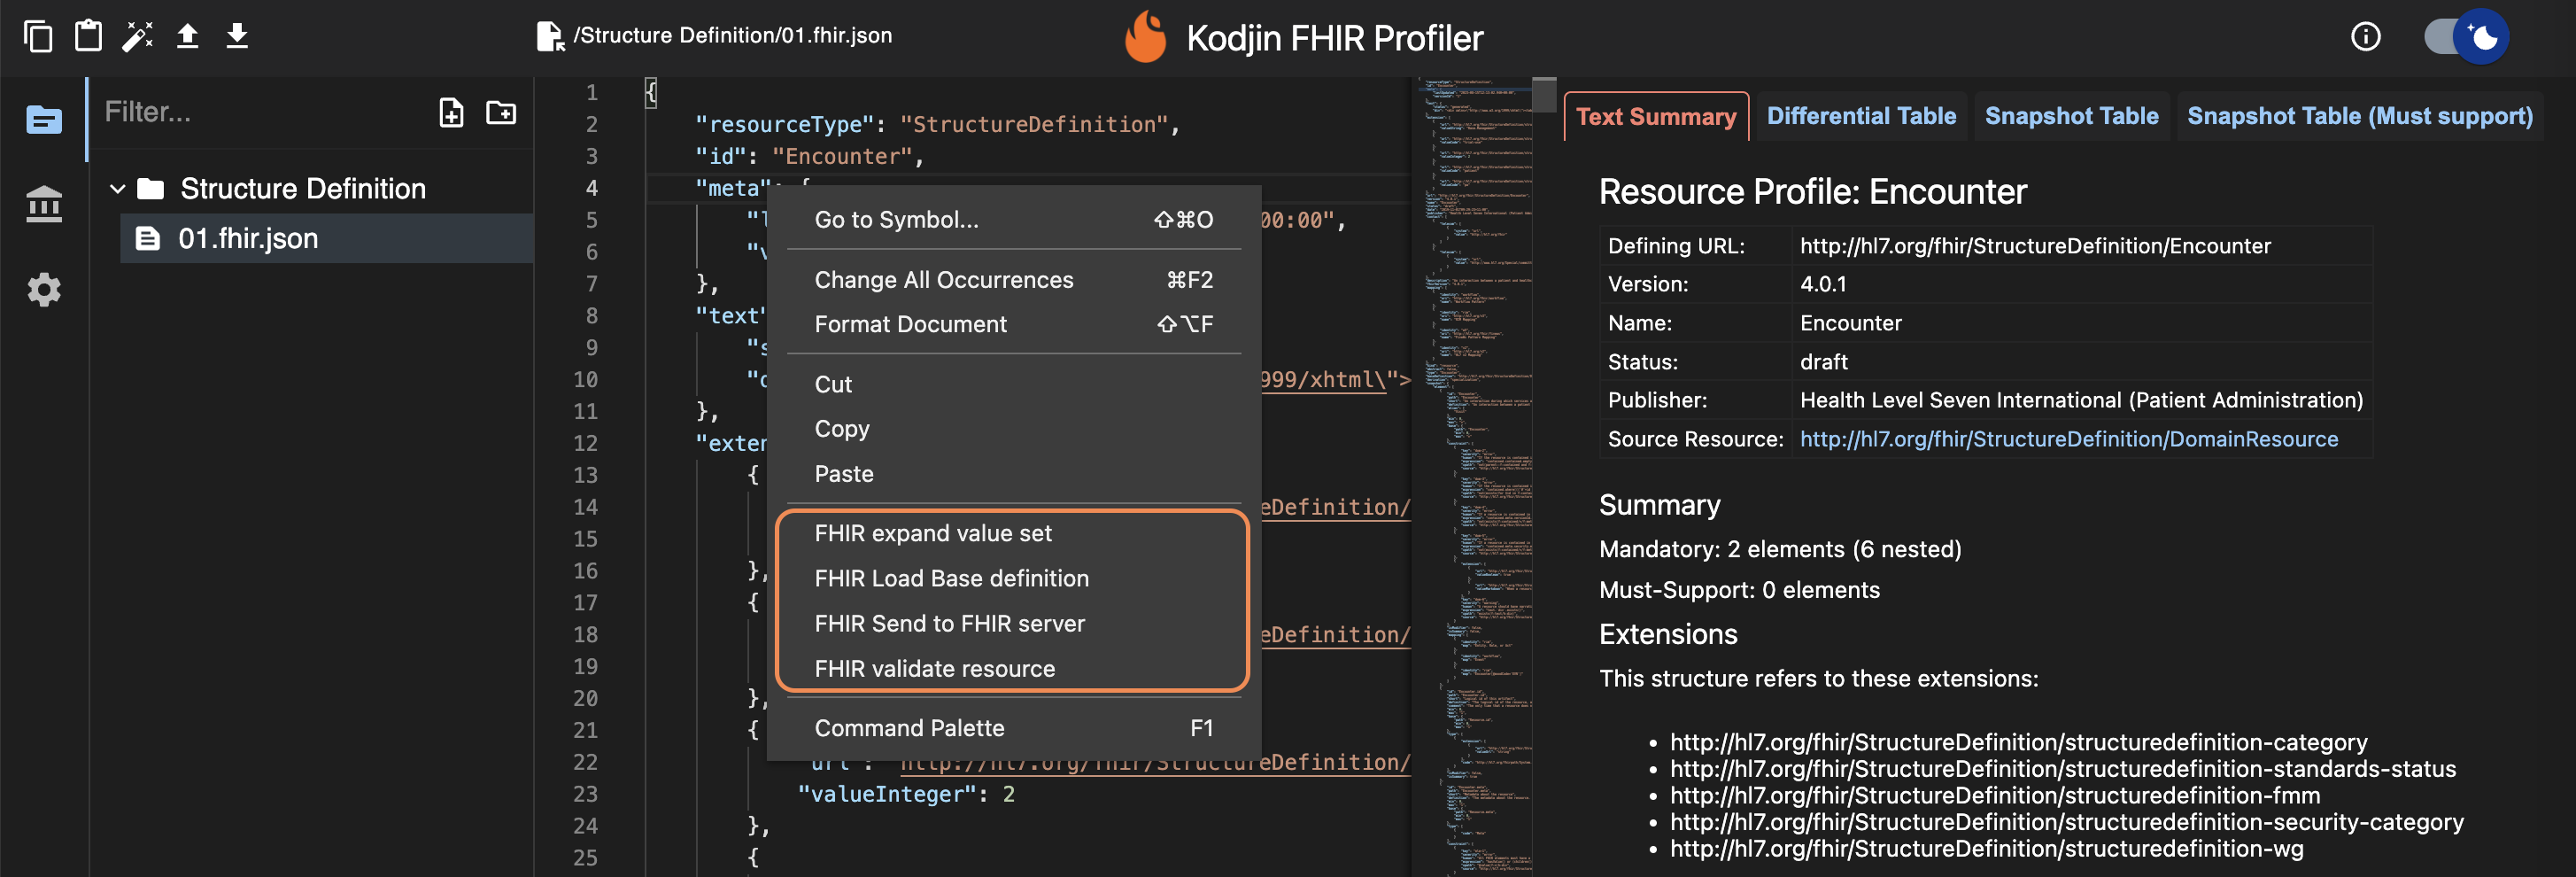 Kodjin FHIR Profiler main functions